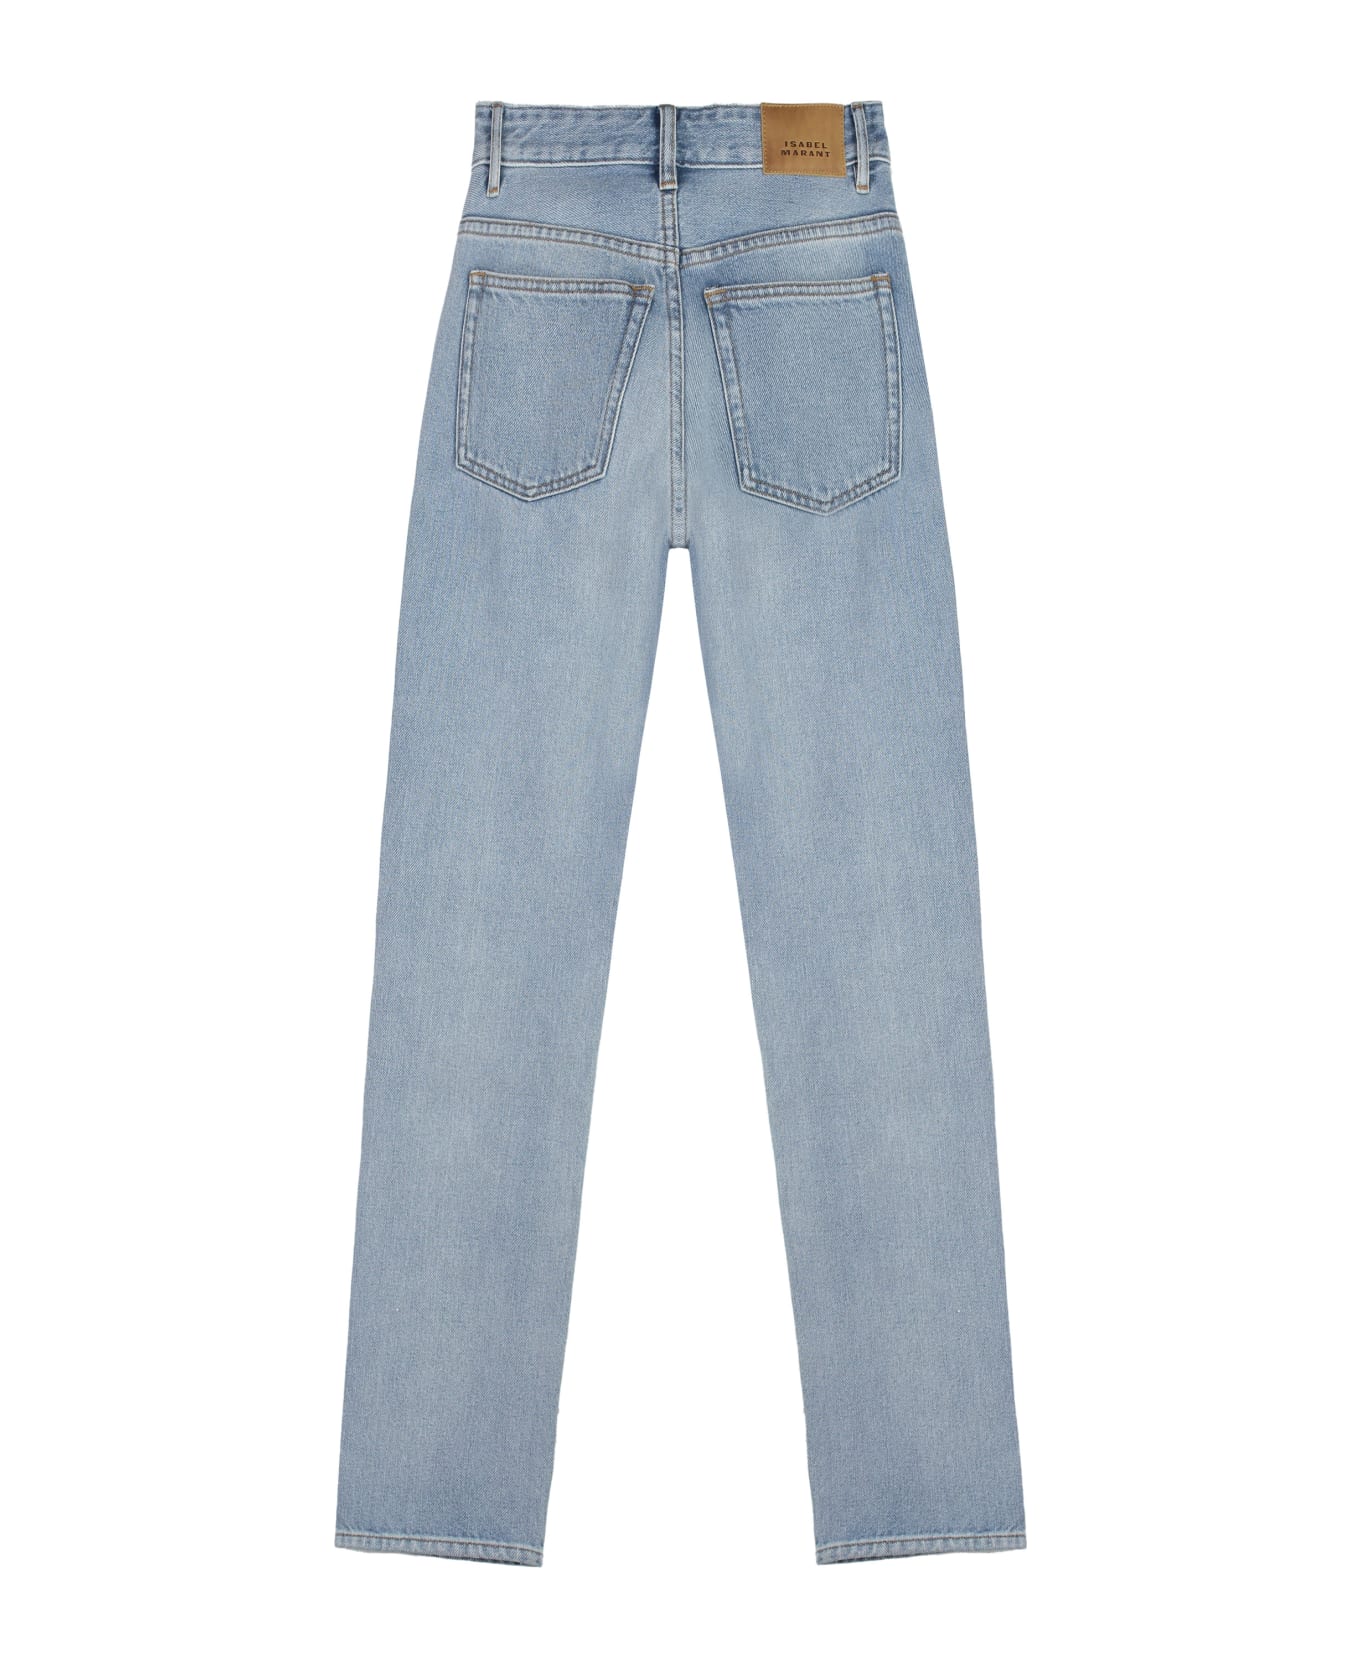 Isabel Marant Jiliana High-rise Skinny-fit Jeans - Denim デニム